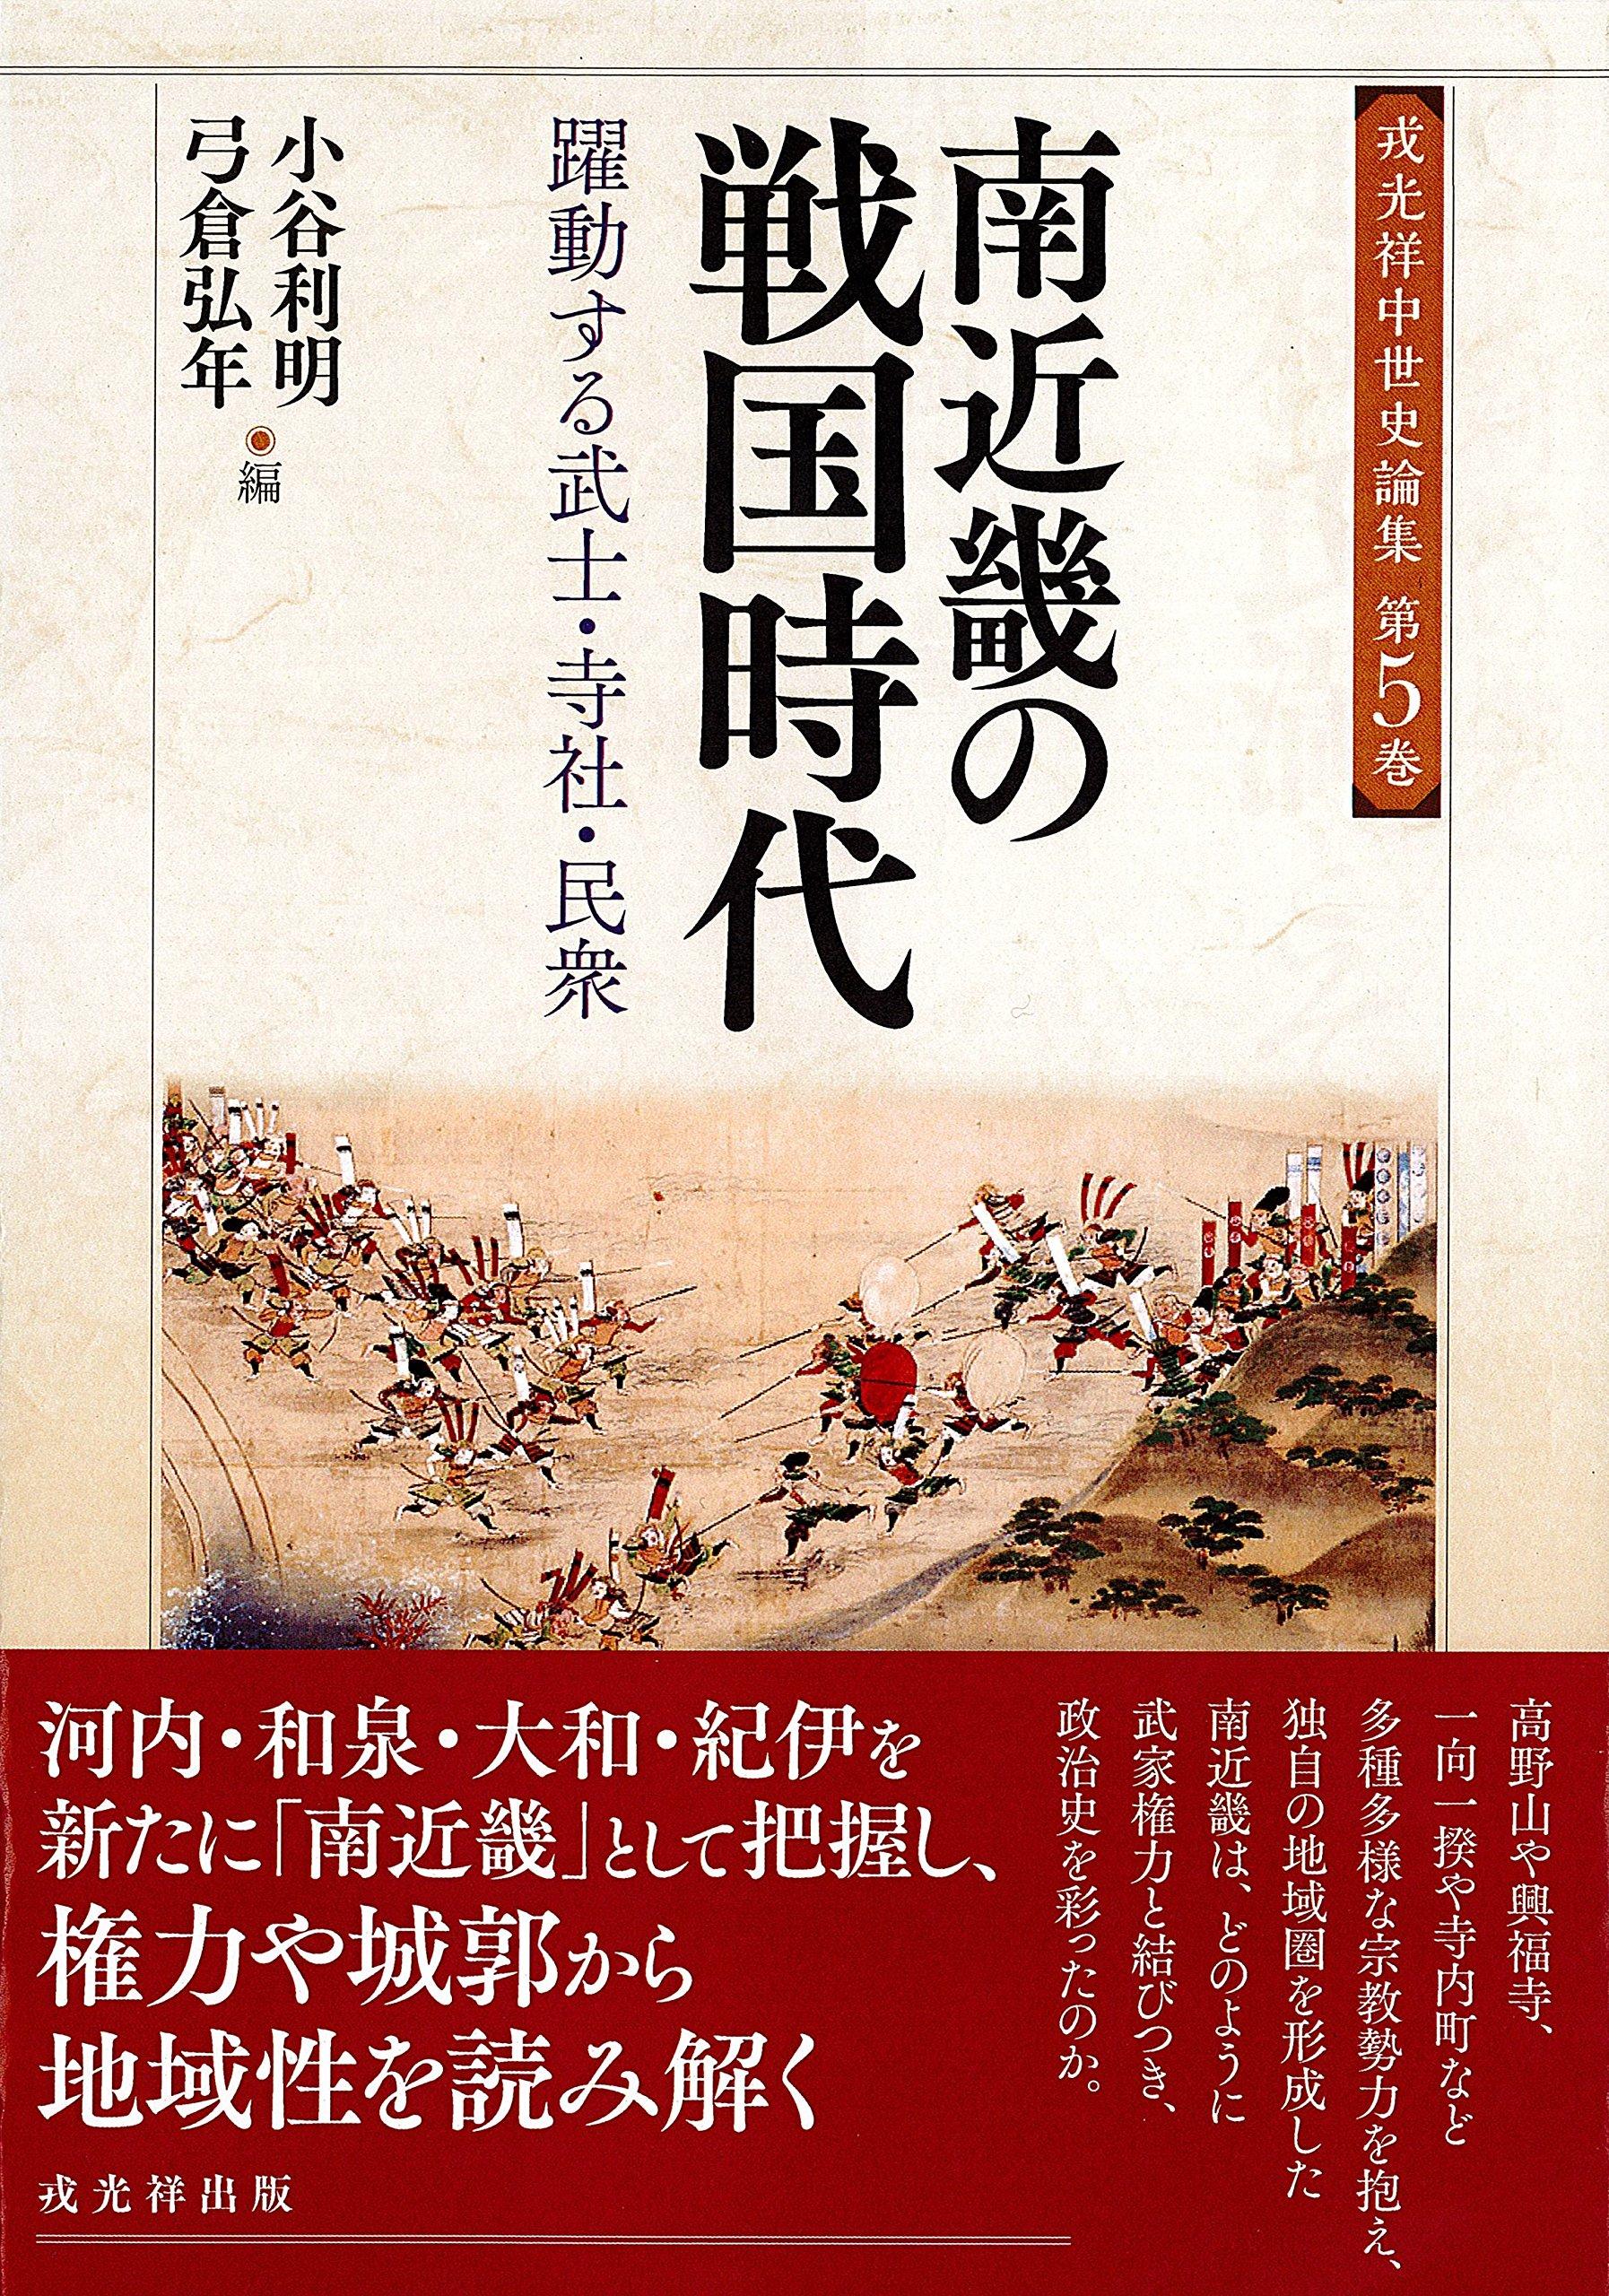 日本战国史原版书籍资讯--2017年12月